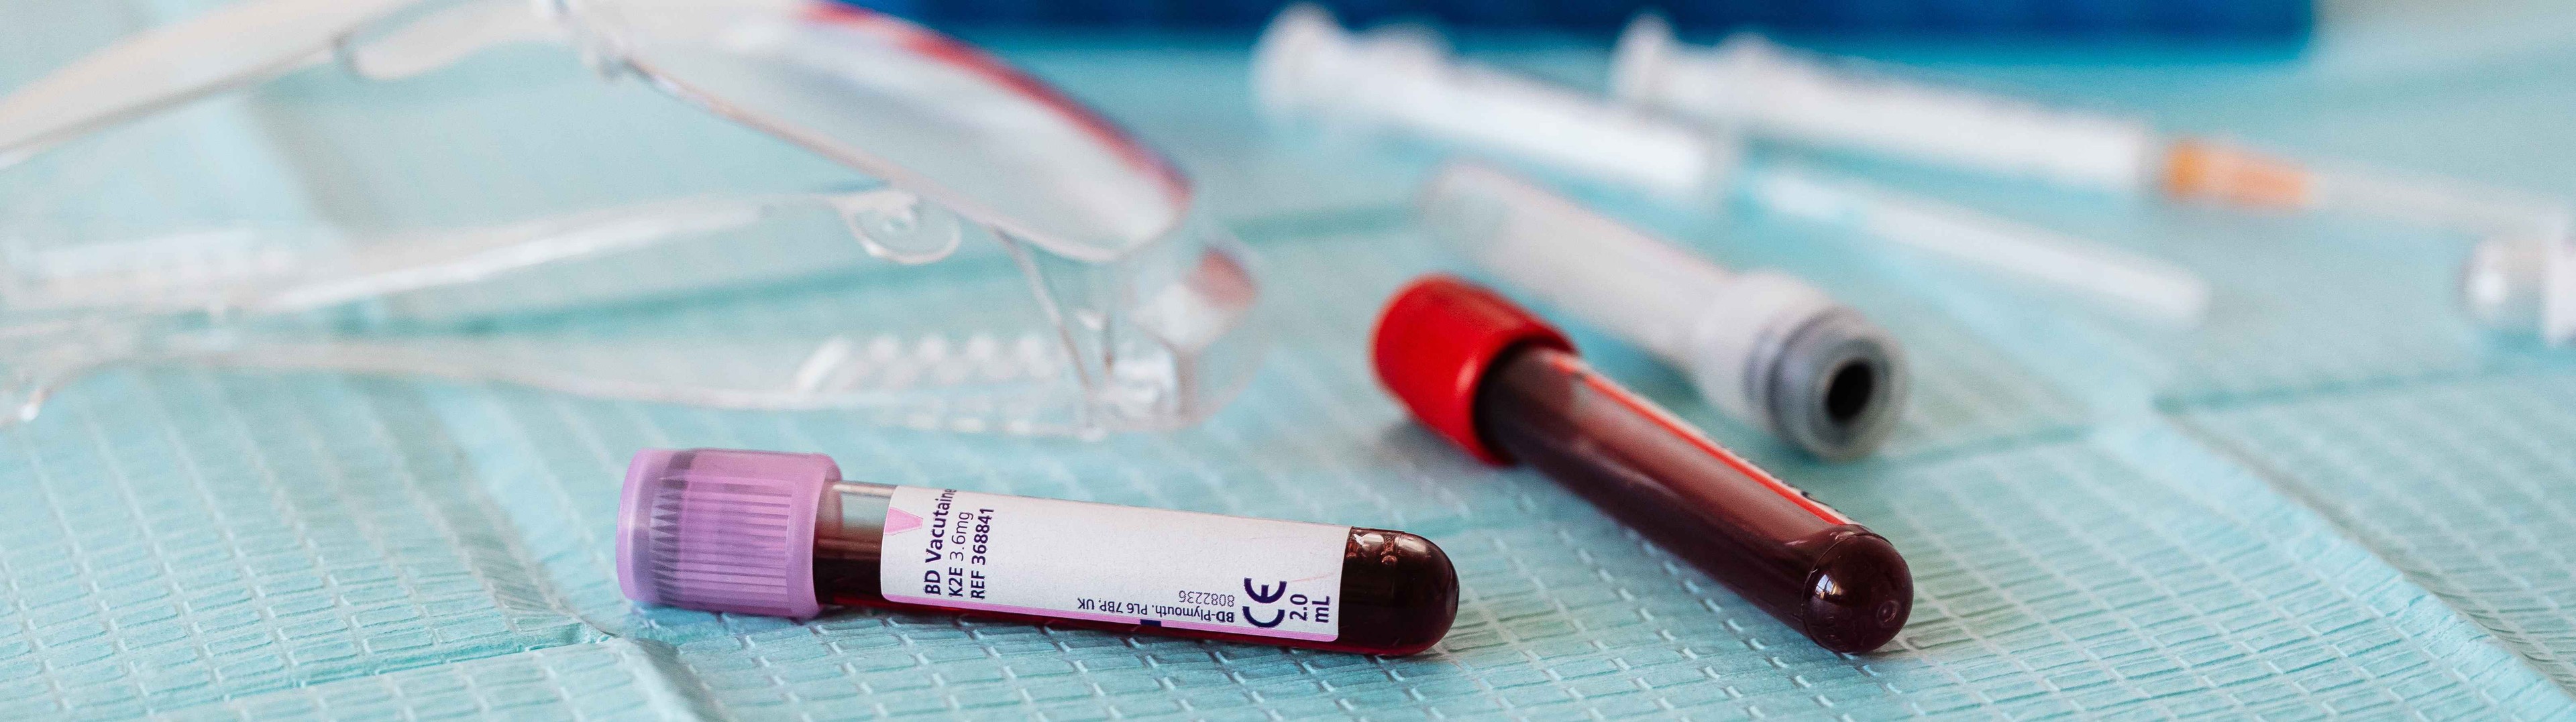 Concizumab reduce un 86% las hemorragias en personas con hemofilia A o B